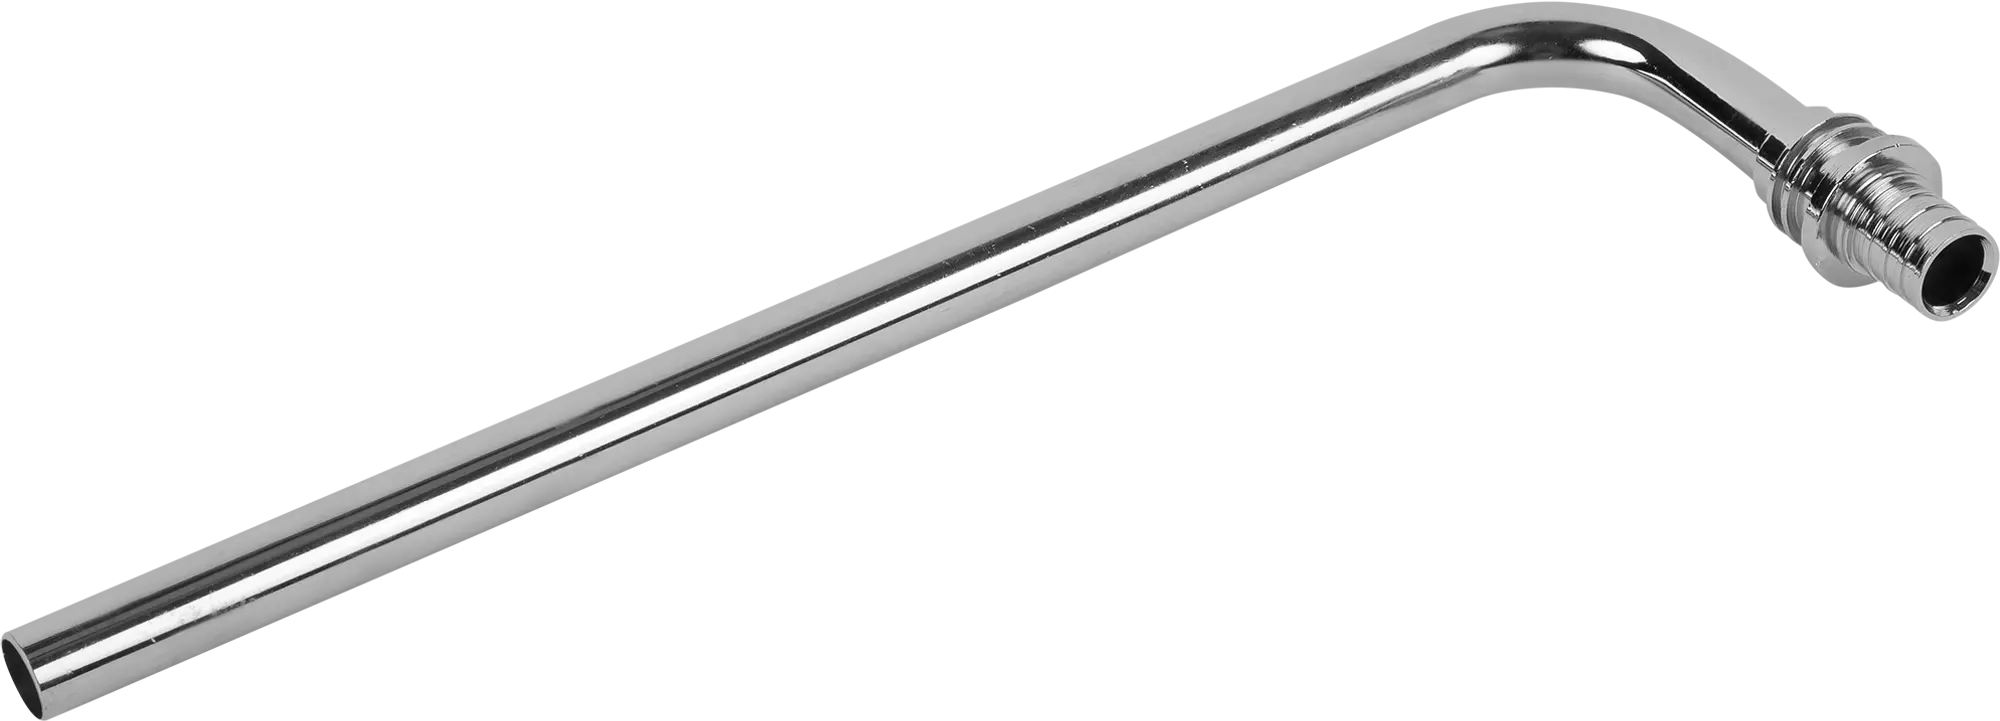 Трубка для радиатора Г-образная ProAqua 20х250 мм латунь